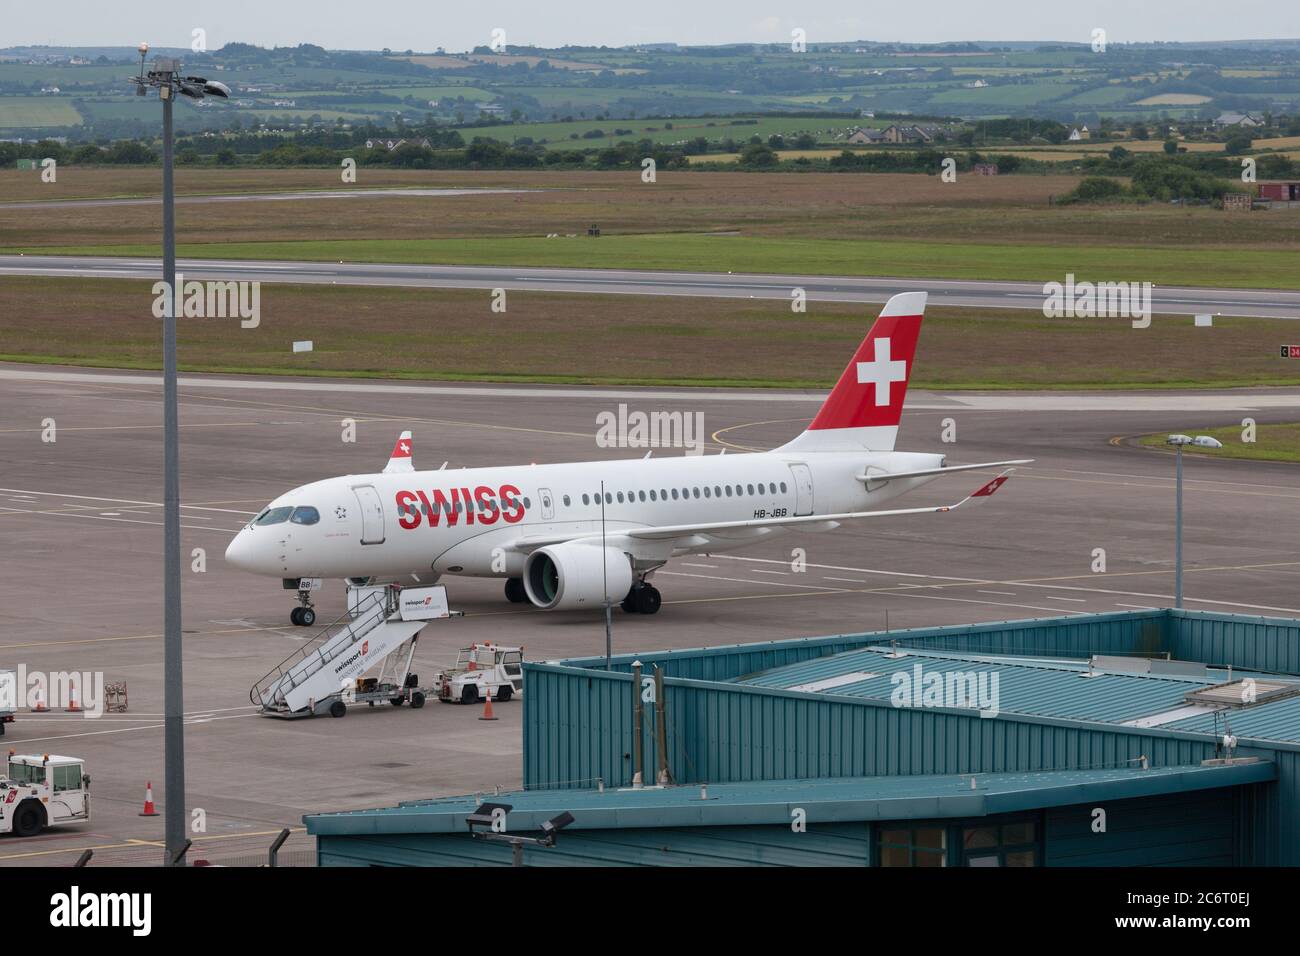 Aéroport de Cork, Cork, Irlande. 12 juillet 2020. Un Airbus A220 suisse se trouvant en taxi vers le terminal lors de son premier vol de service hebdomadaire au départ de Zurich avec 26 passagers à l'aéroport de Cork, Cork, Irlande. - crédit; David Creedon / Alamy Live News Banque D'Images